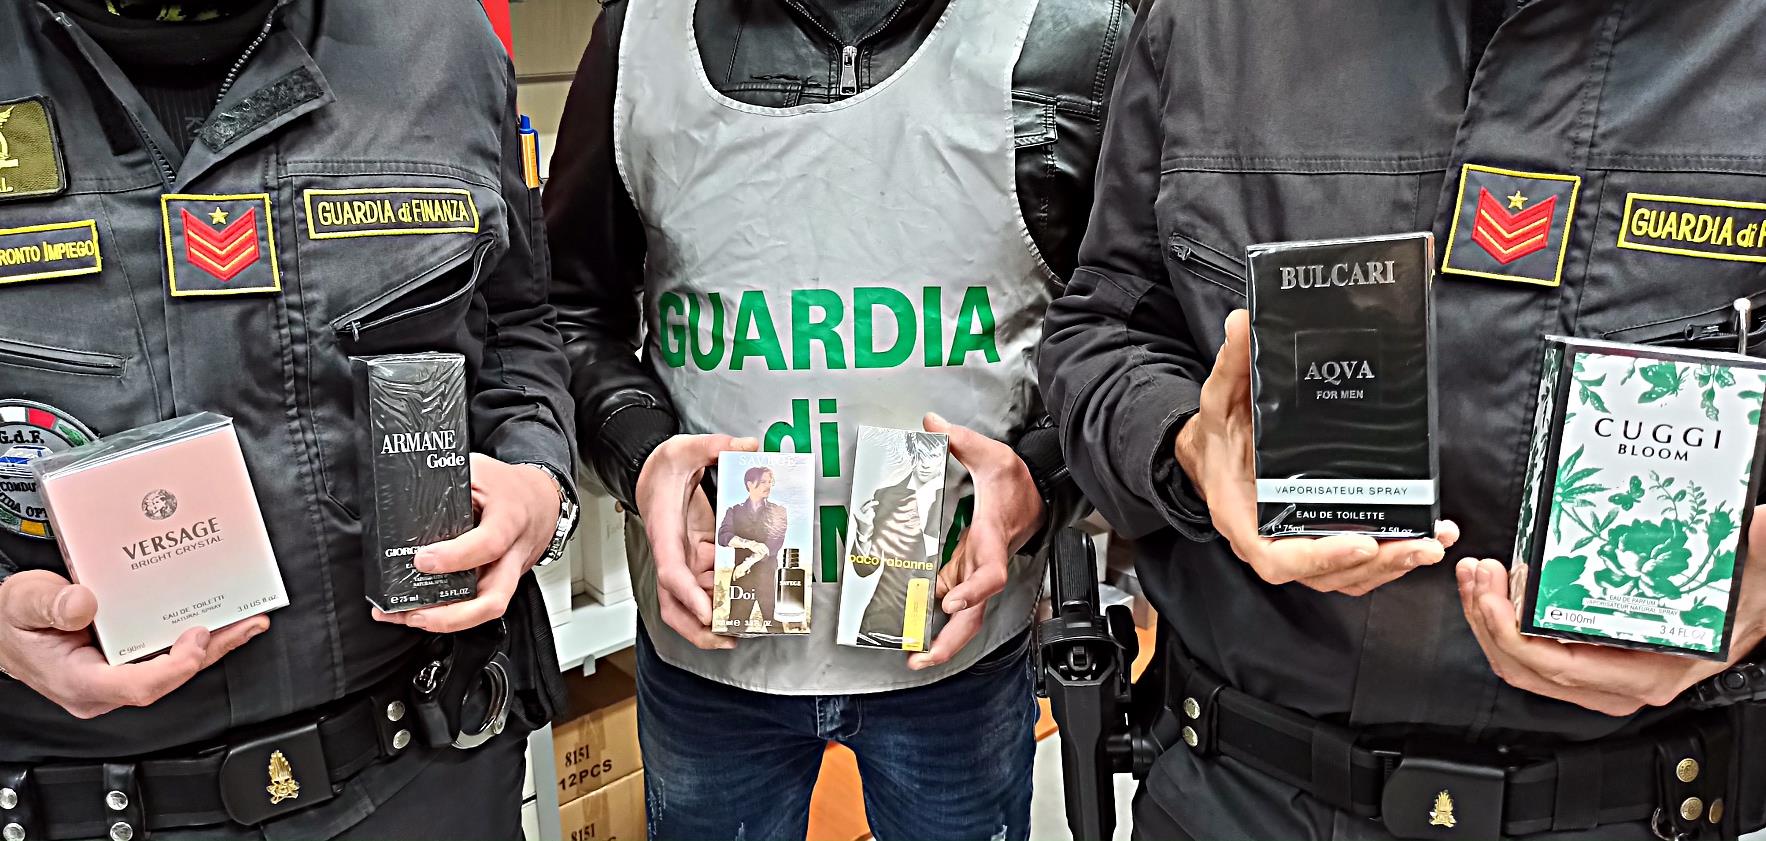 Vendita profumi contraffatti, denunciato il titolare di un’attività commerciale a Catania – VIDEO